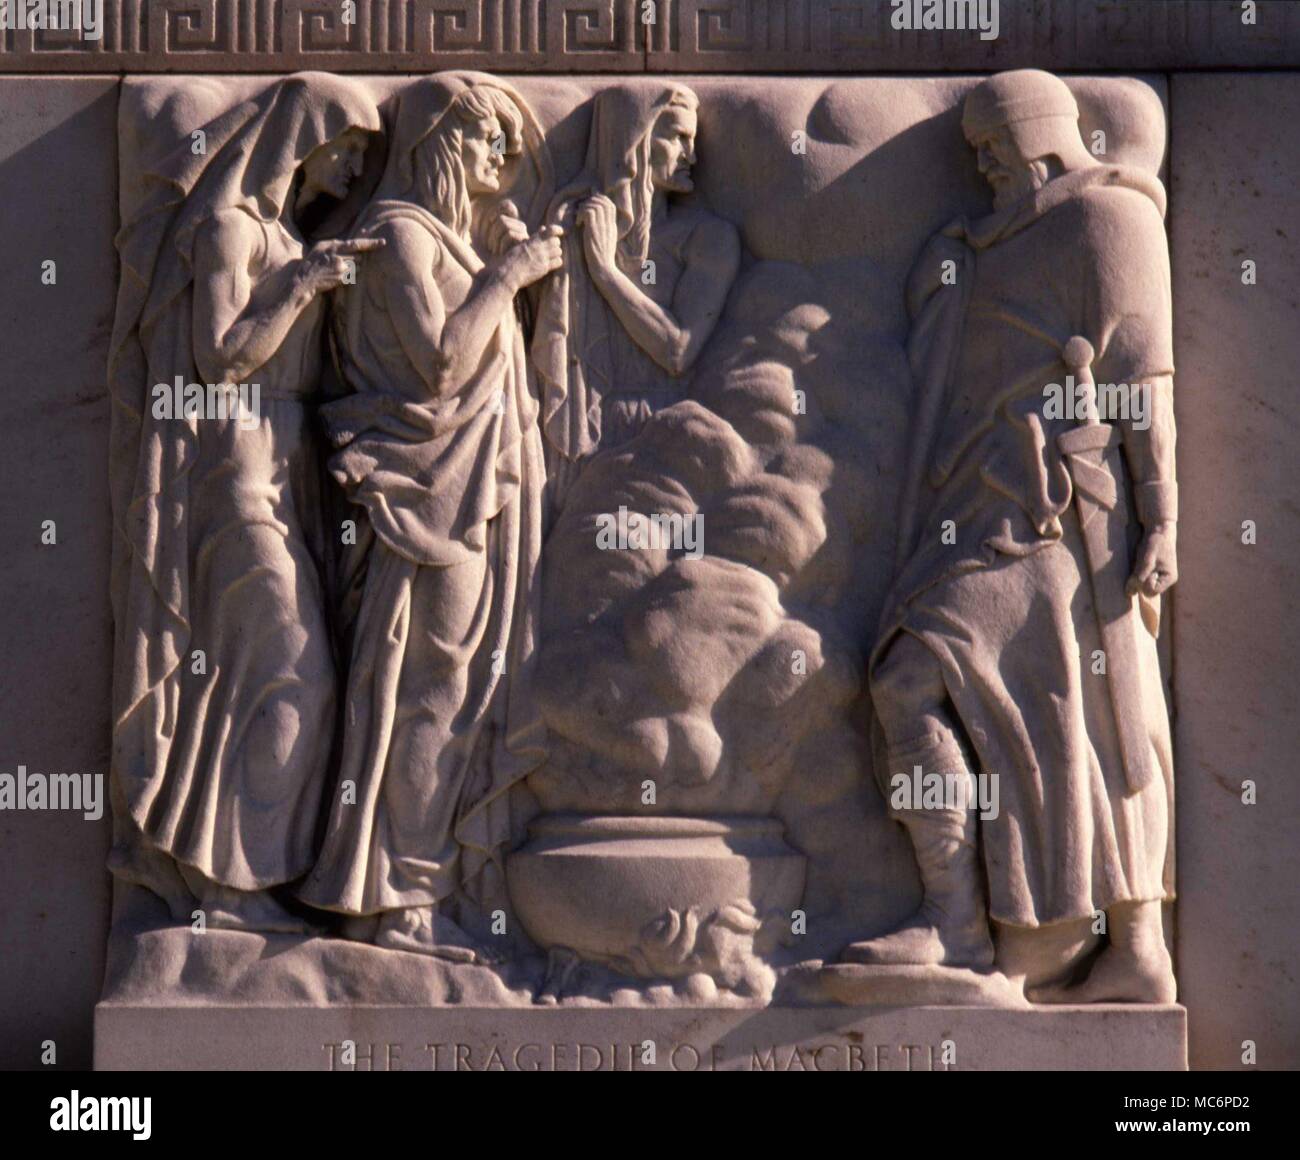 Las tres hermanas "raro" que se reúnen en la Macbeth blastd Heath. Escultura enla fachada de la Biblioteca Folger Shakespeaare Memorial, Washington DC. Esculpida por John Gregory, 1932. Foto de stock